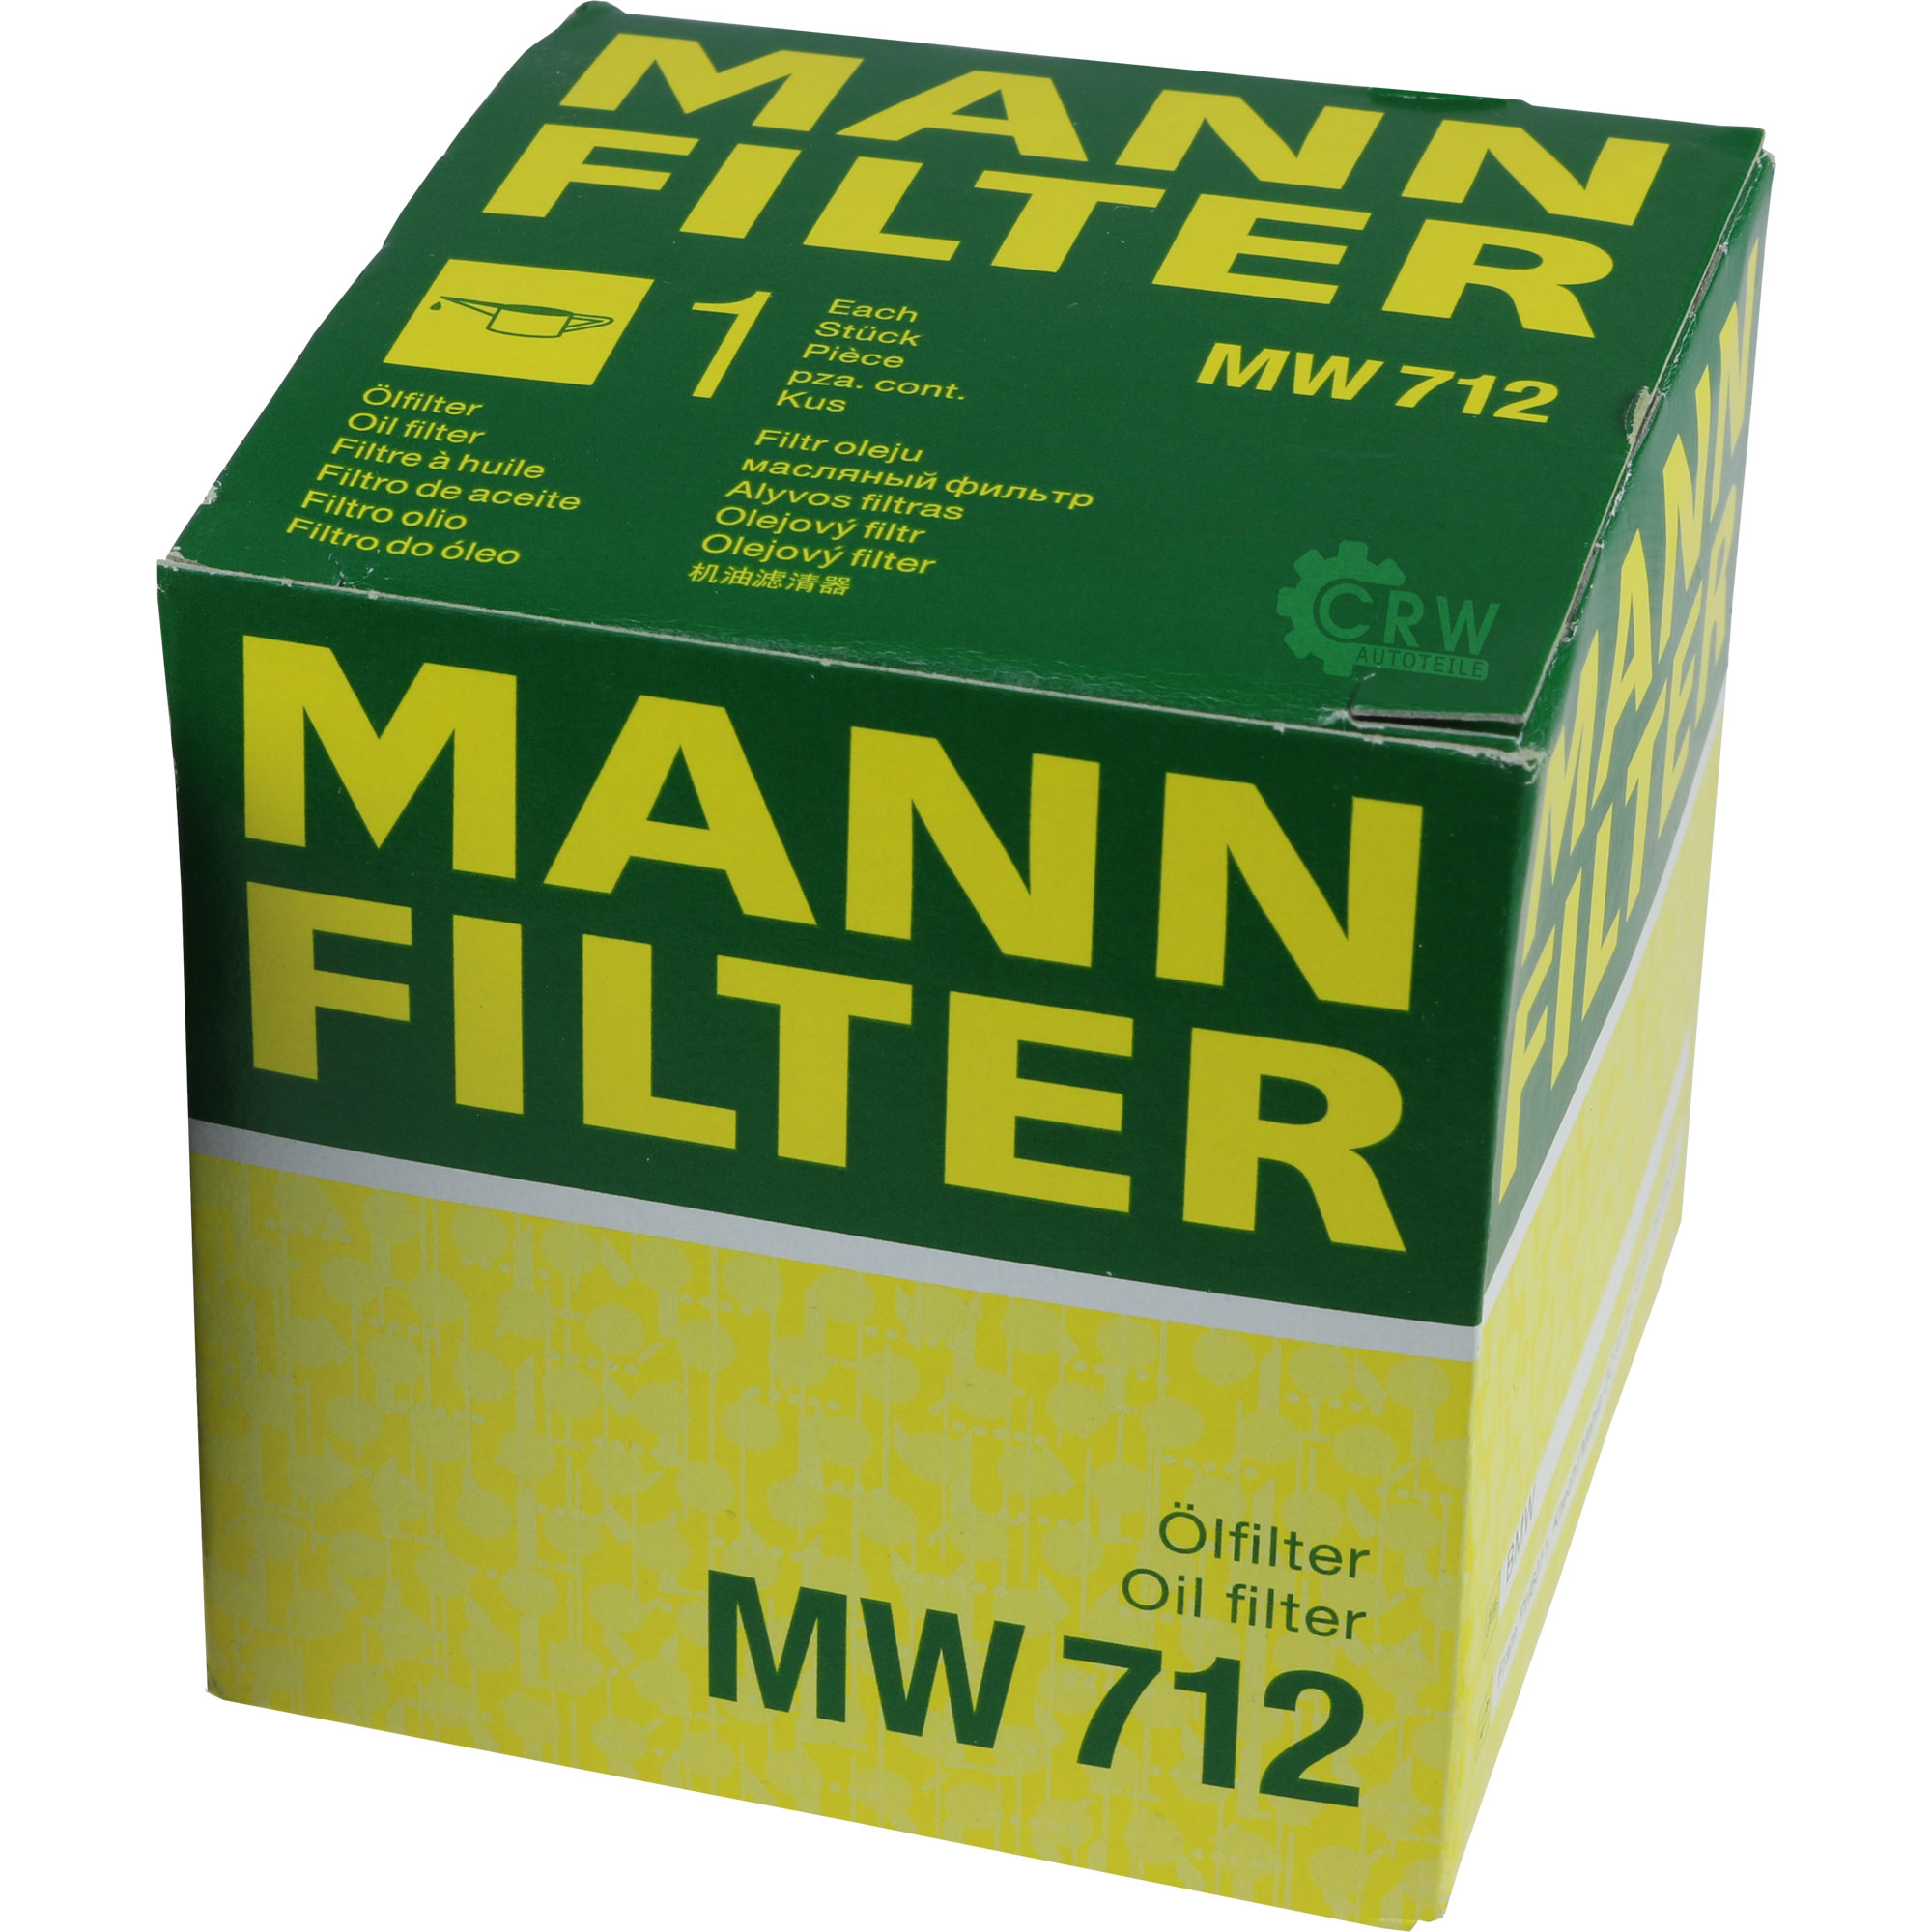 MANN-FILTER Ölfilter MW 712 Oil Filter